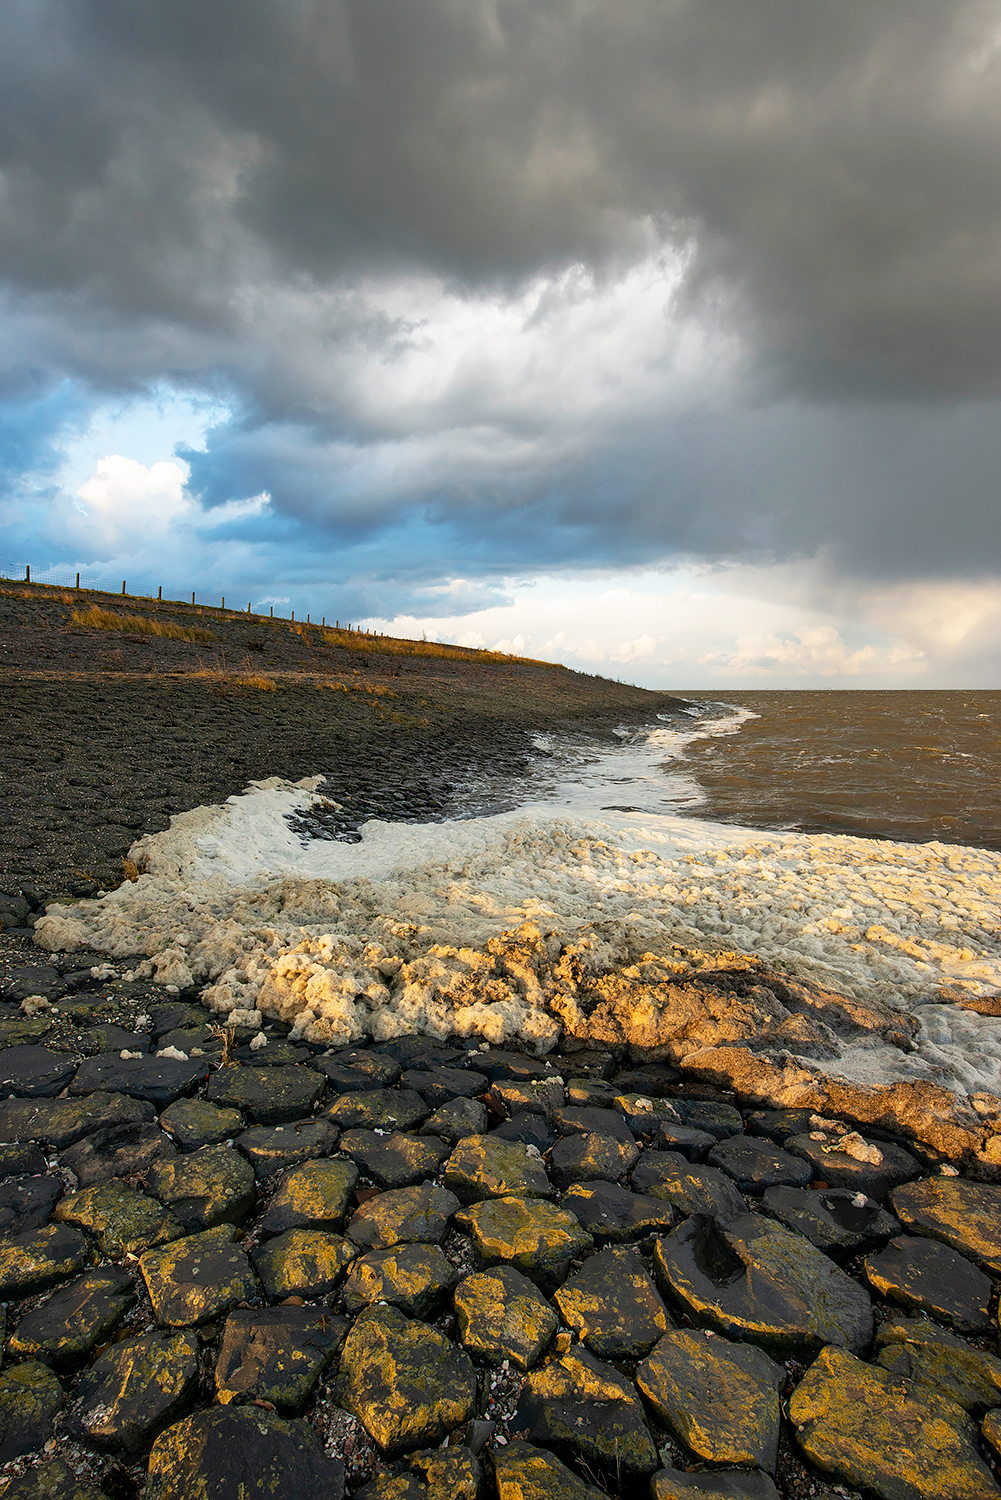 Donkere wolken boven aangespoeld schuimalg (Phaeocystis globosa) aan de voet van de Waddenzeedijk bij Vatrop, op het voormalige Waddeneiland Wieringen.